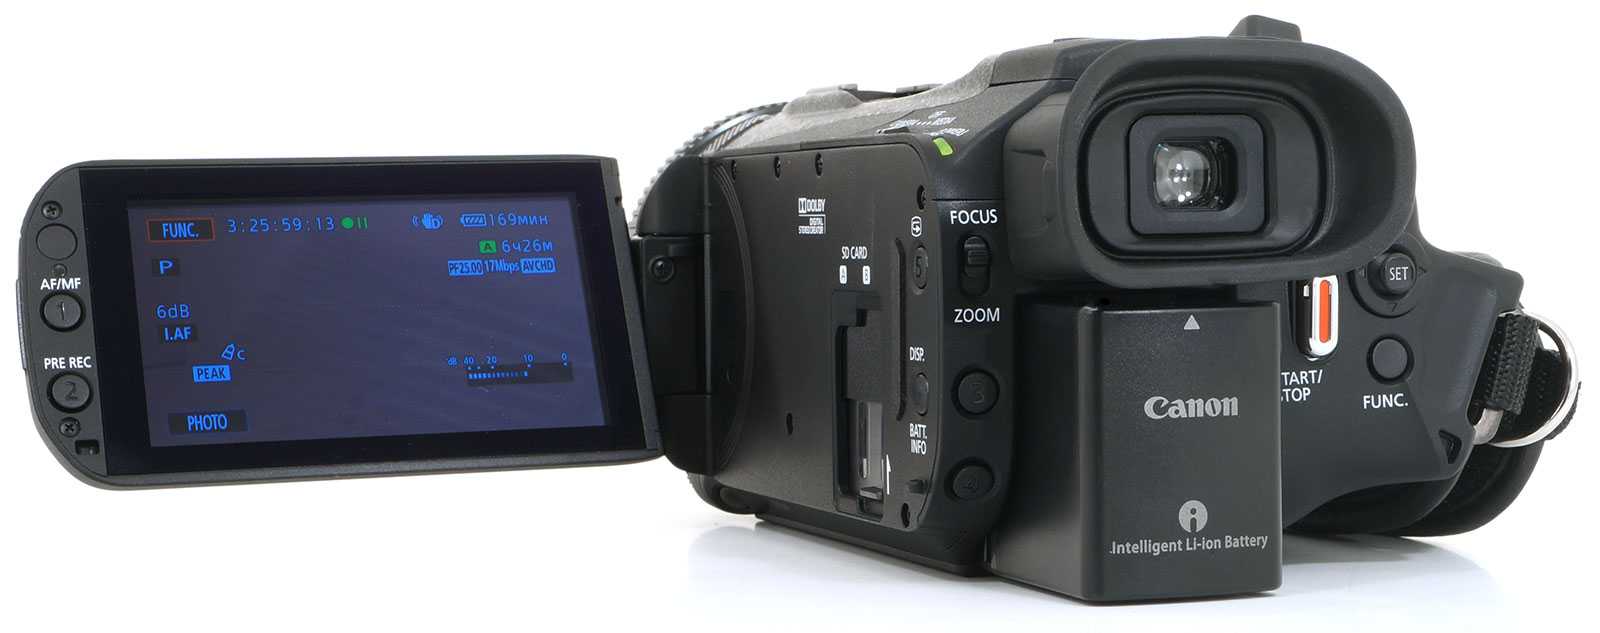 Видеокамера canon legria hf g25 - купить | цены | обзоры и тесты | отзывы | параметры и характеристики | инструкция